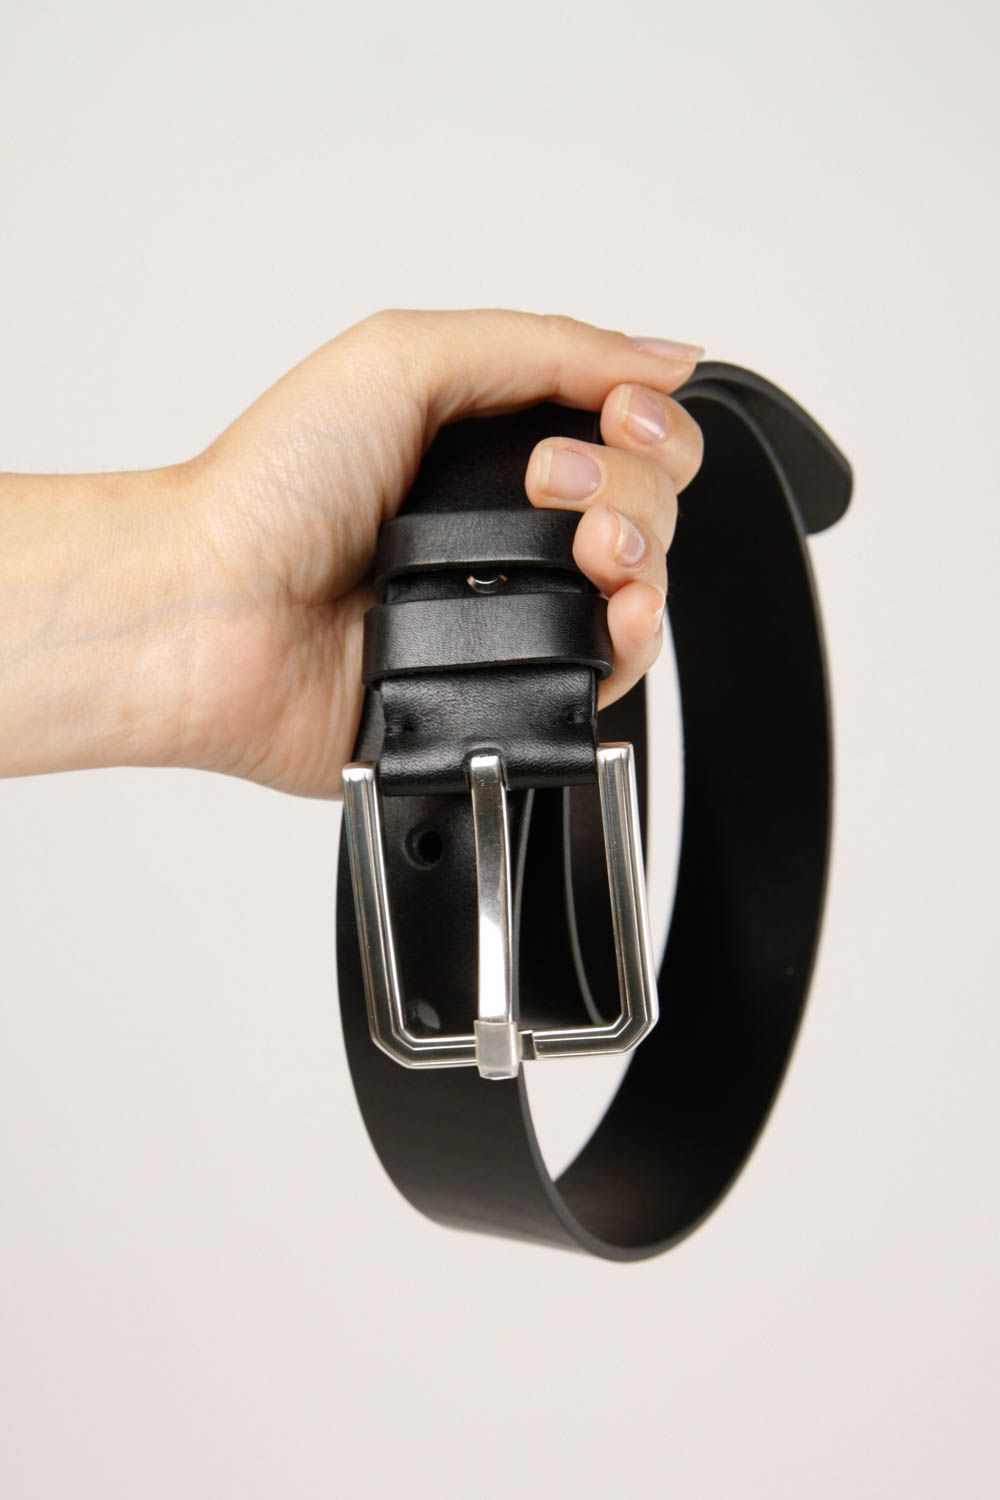 Handmade belt designer belt for men gift ideas leather accessory gift for him photo 2